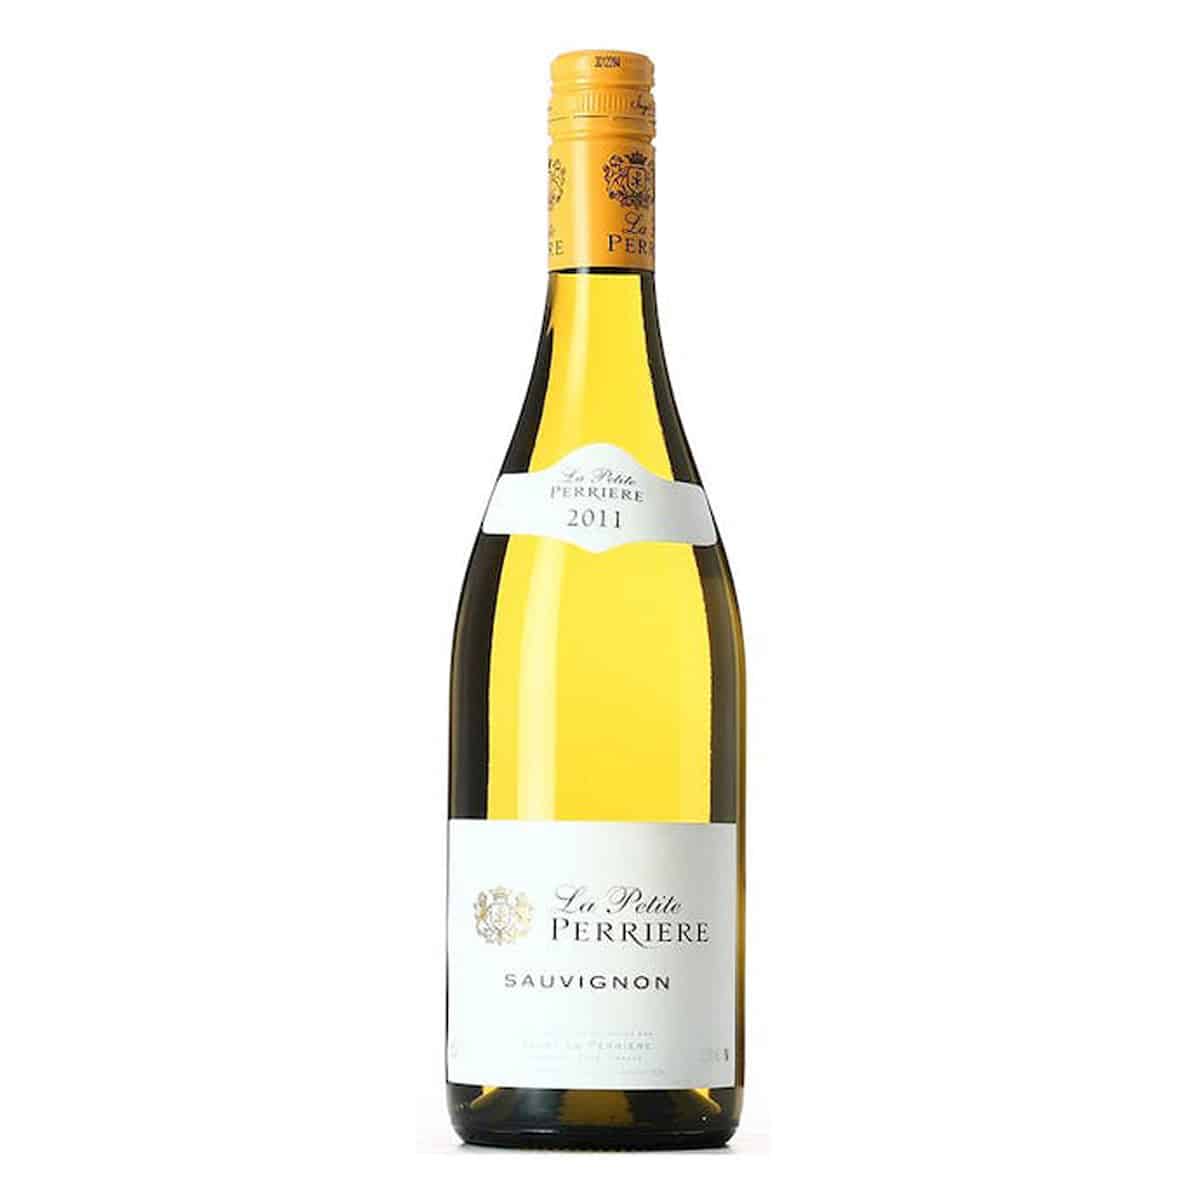 La Petite Perriere Sauvignon Blanc di Saget Perriere è un vino bianco, prodotto in Val De Loire con uve di Sauvignon Blanc che affina in tini di acciaio